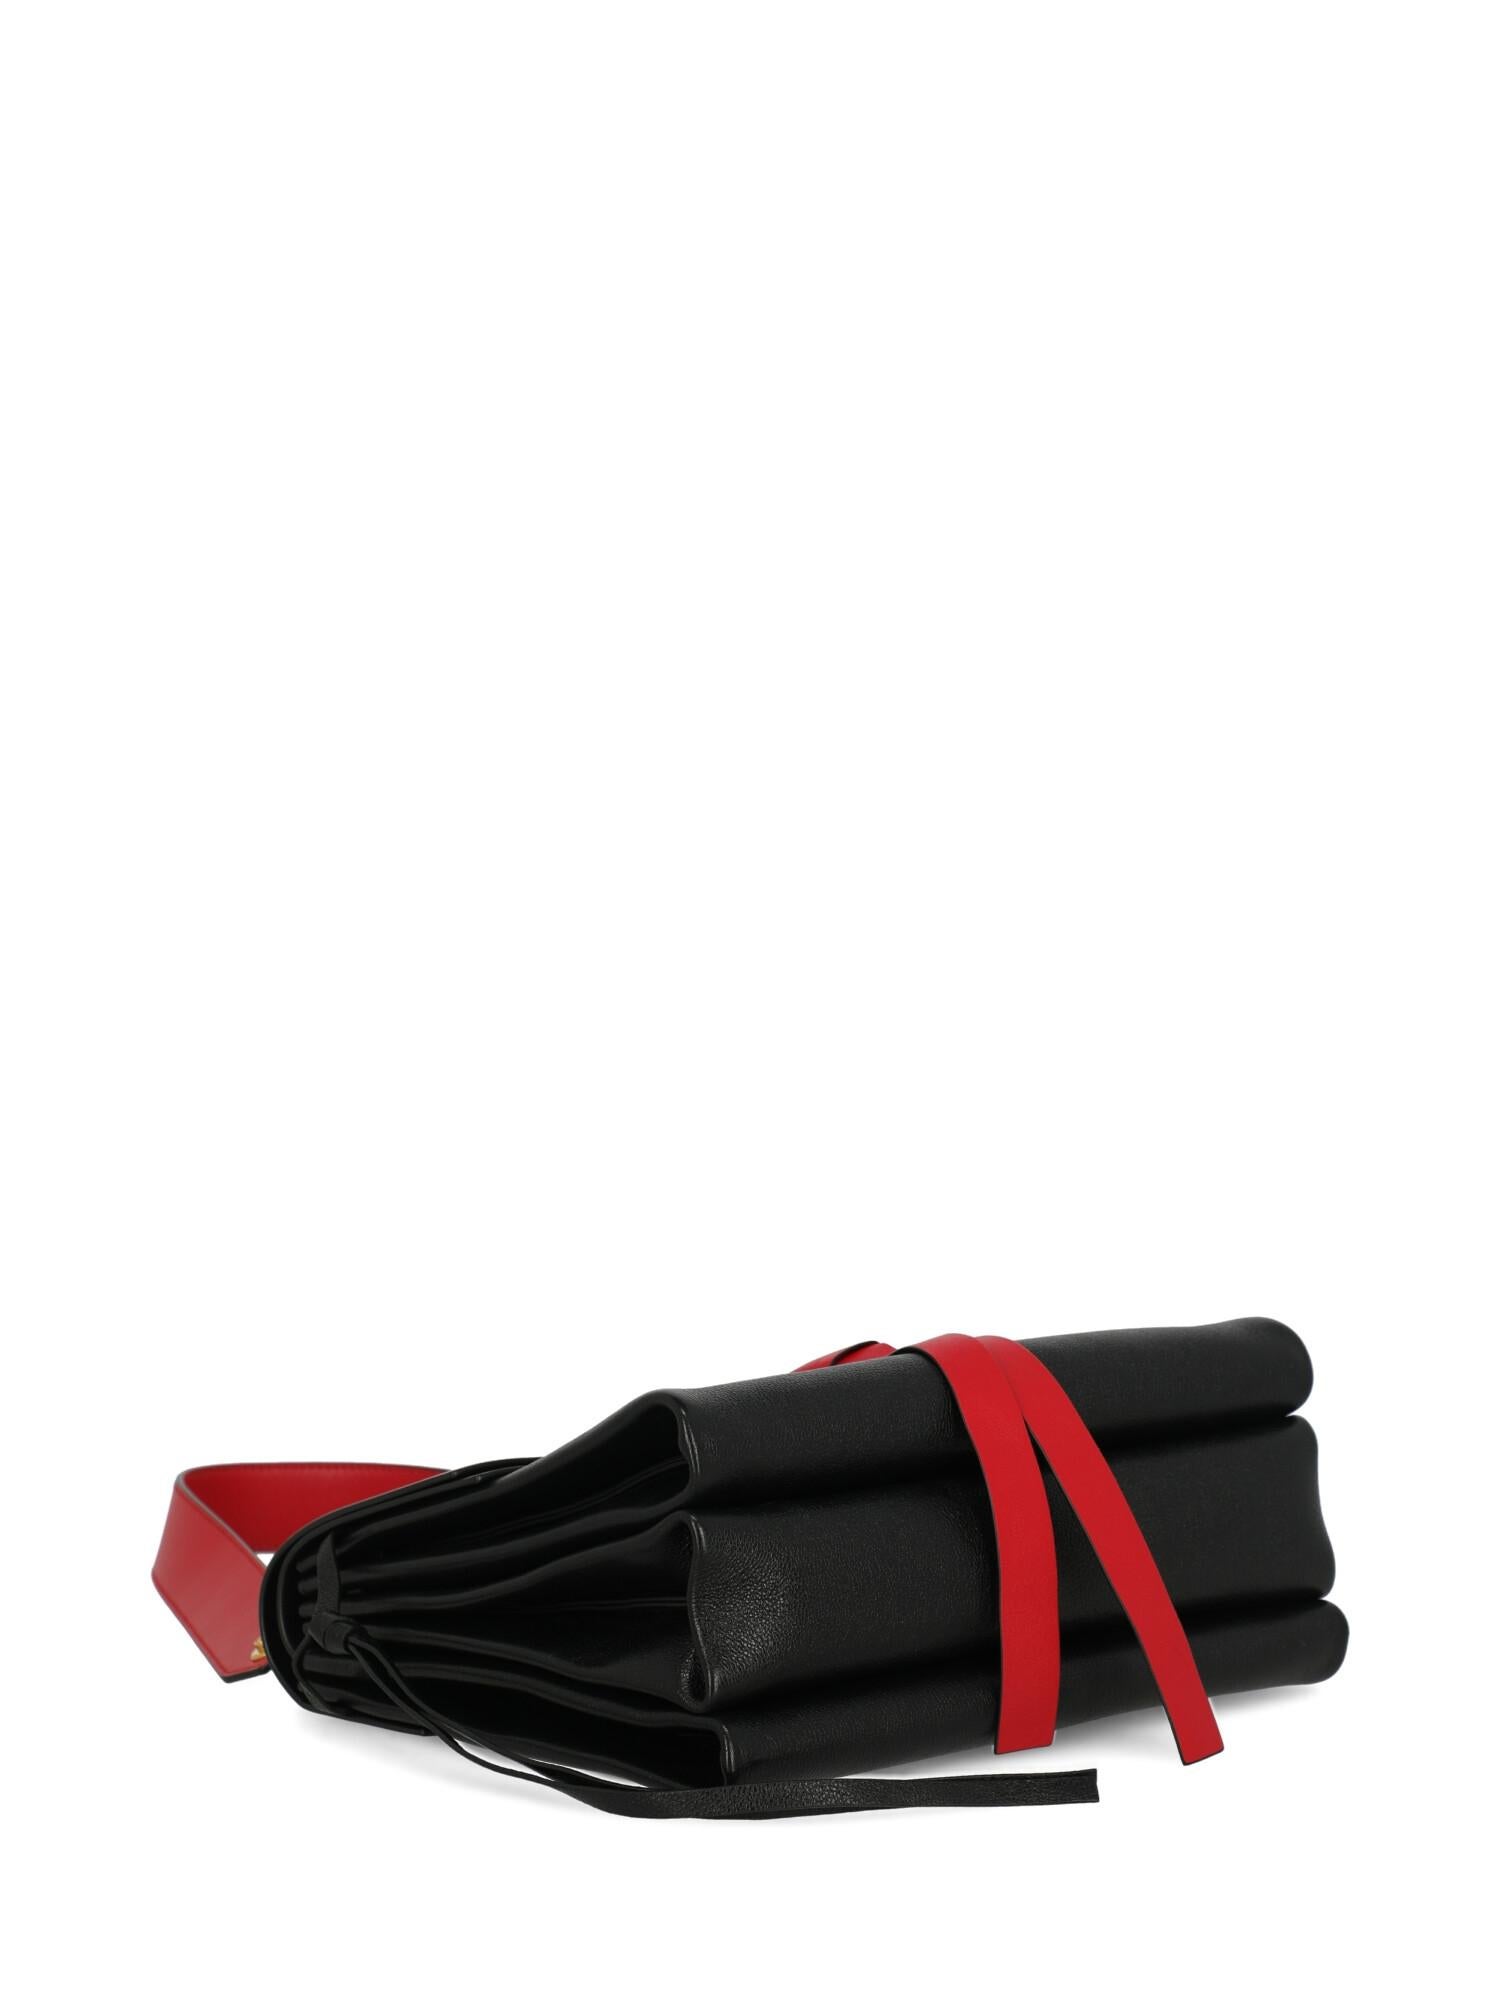 Valentino Women's Shoulder Bag V-Ring Black/Red Leather For Sale 1